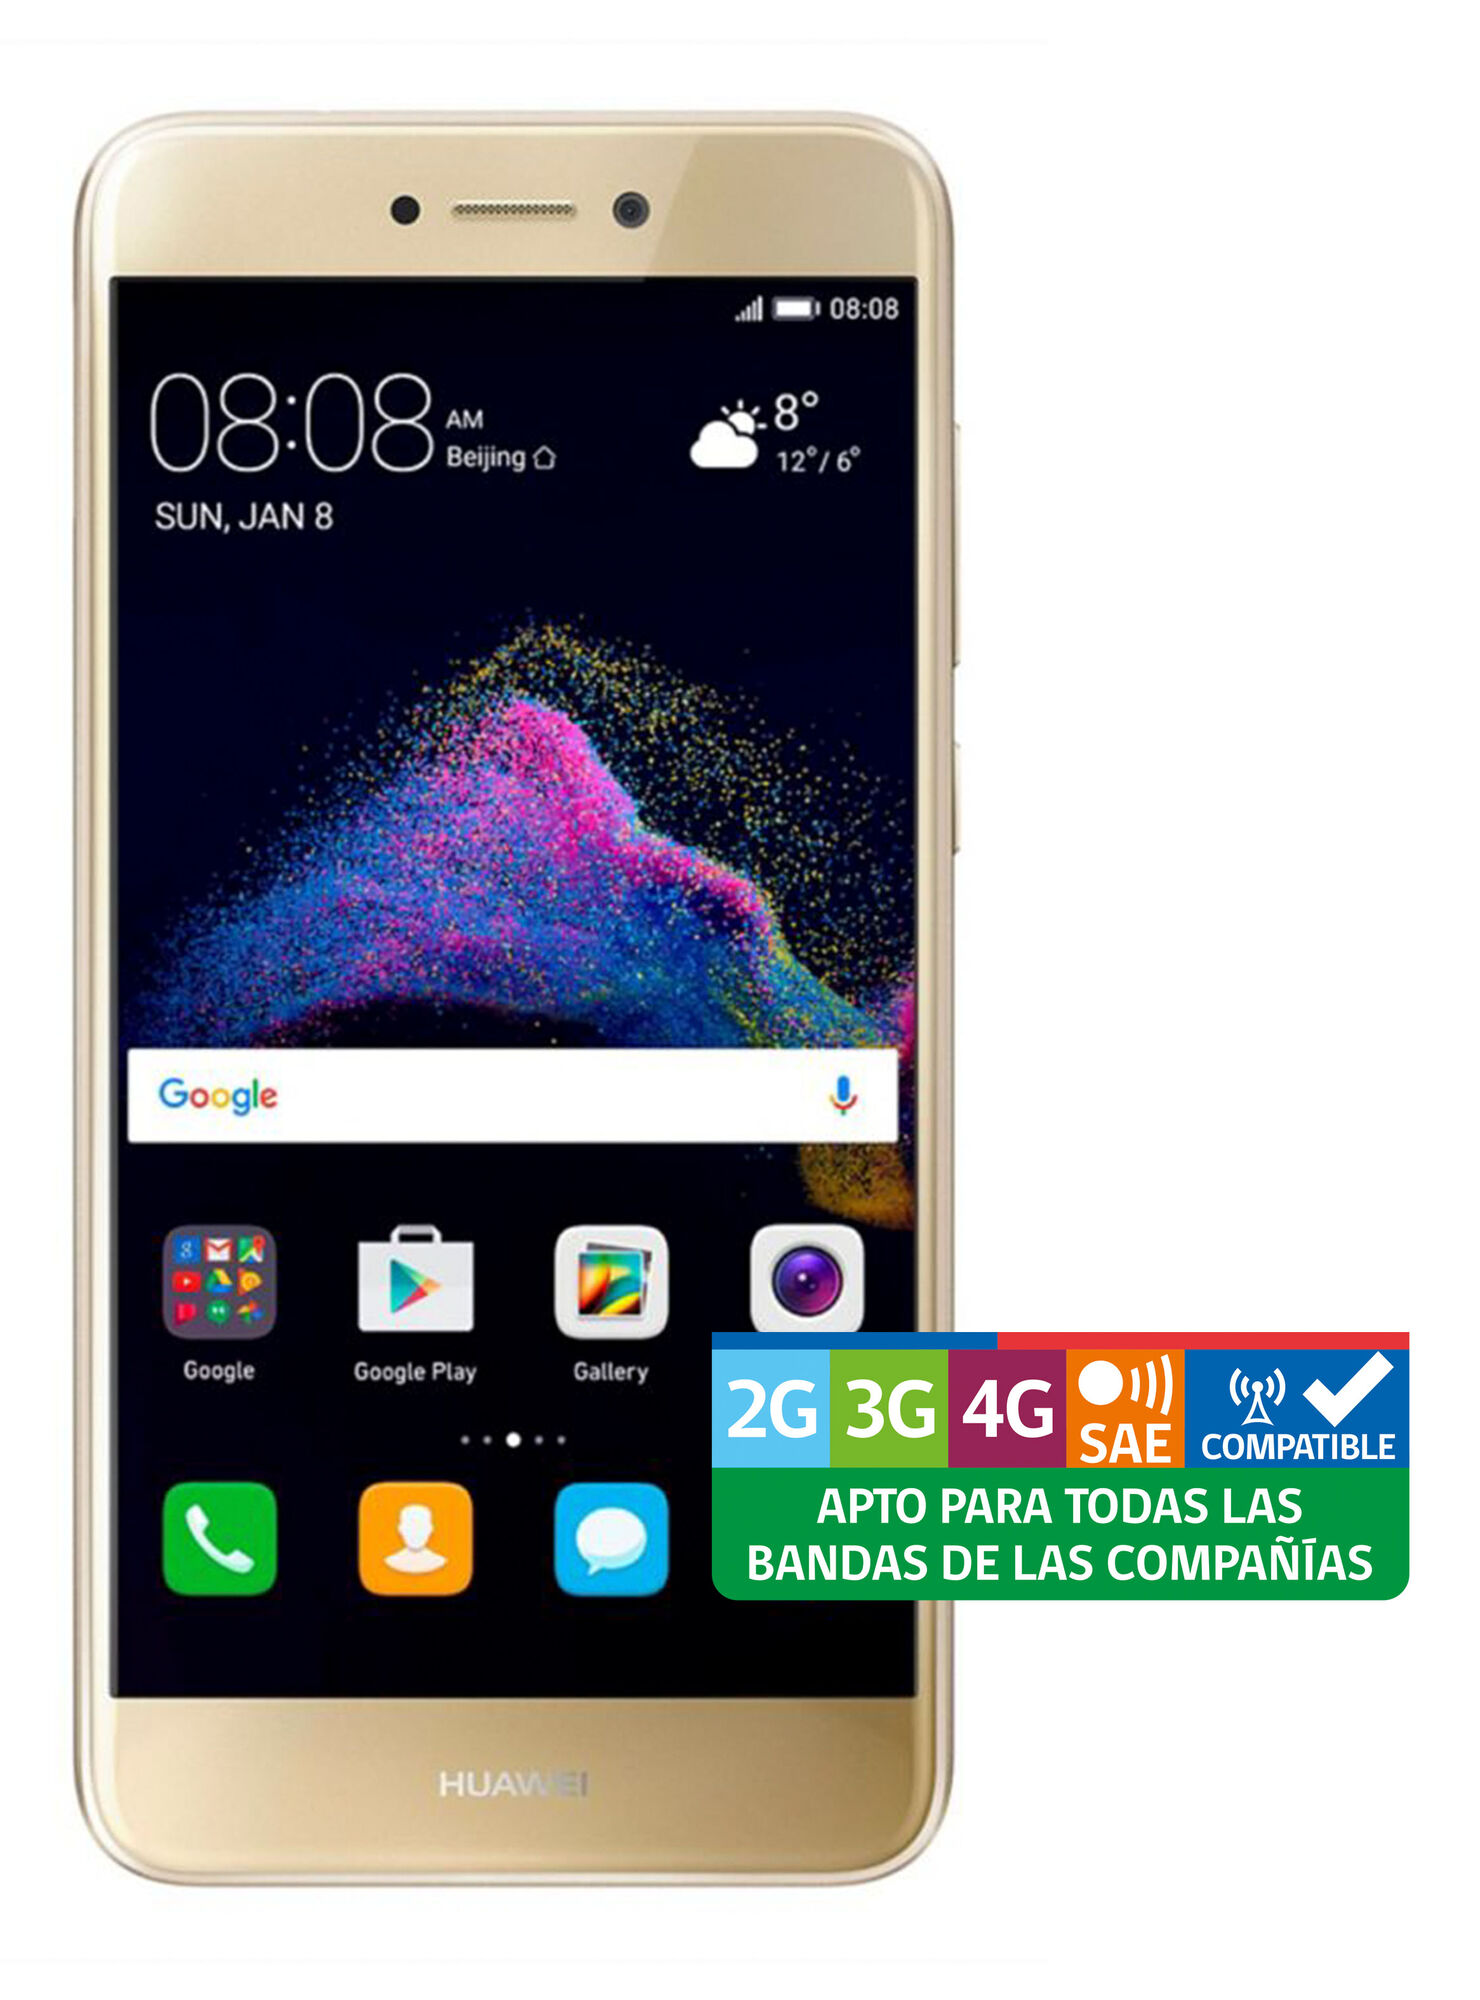 Reparación posible seguro Circunstancias imprevistas Smartphone Huawei P9 Lite 2017 5.2" Dorado Liberado - Smartphones | Paris.cl